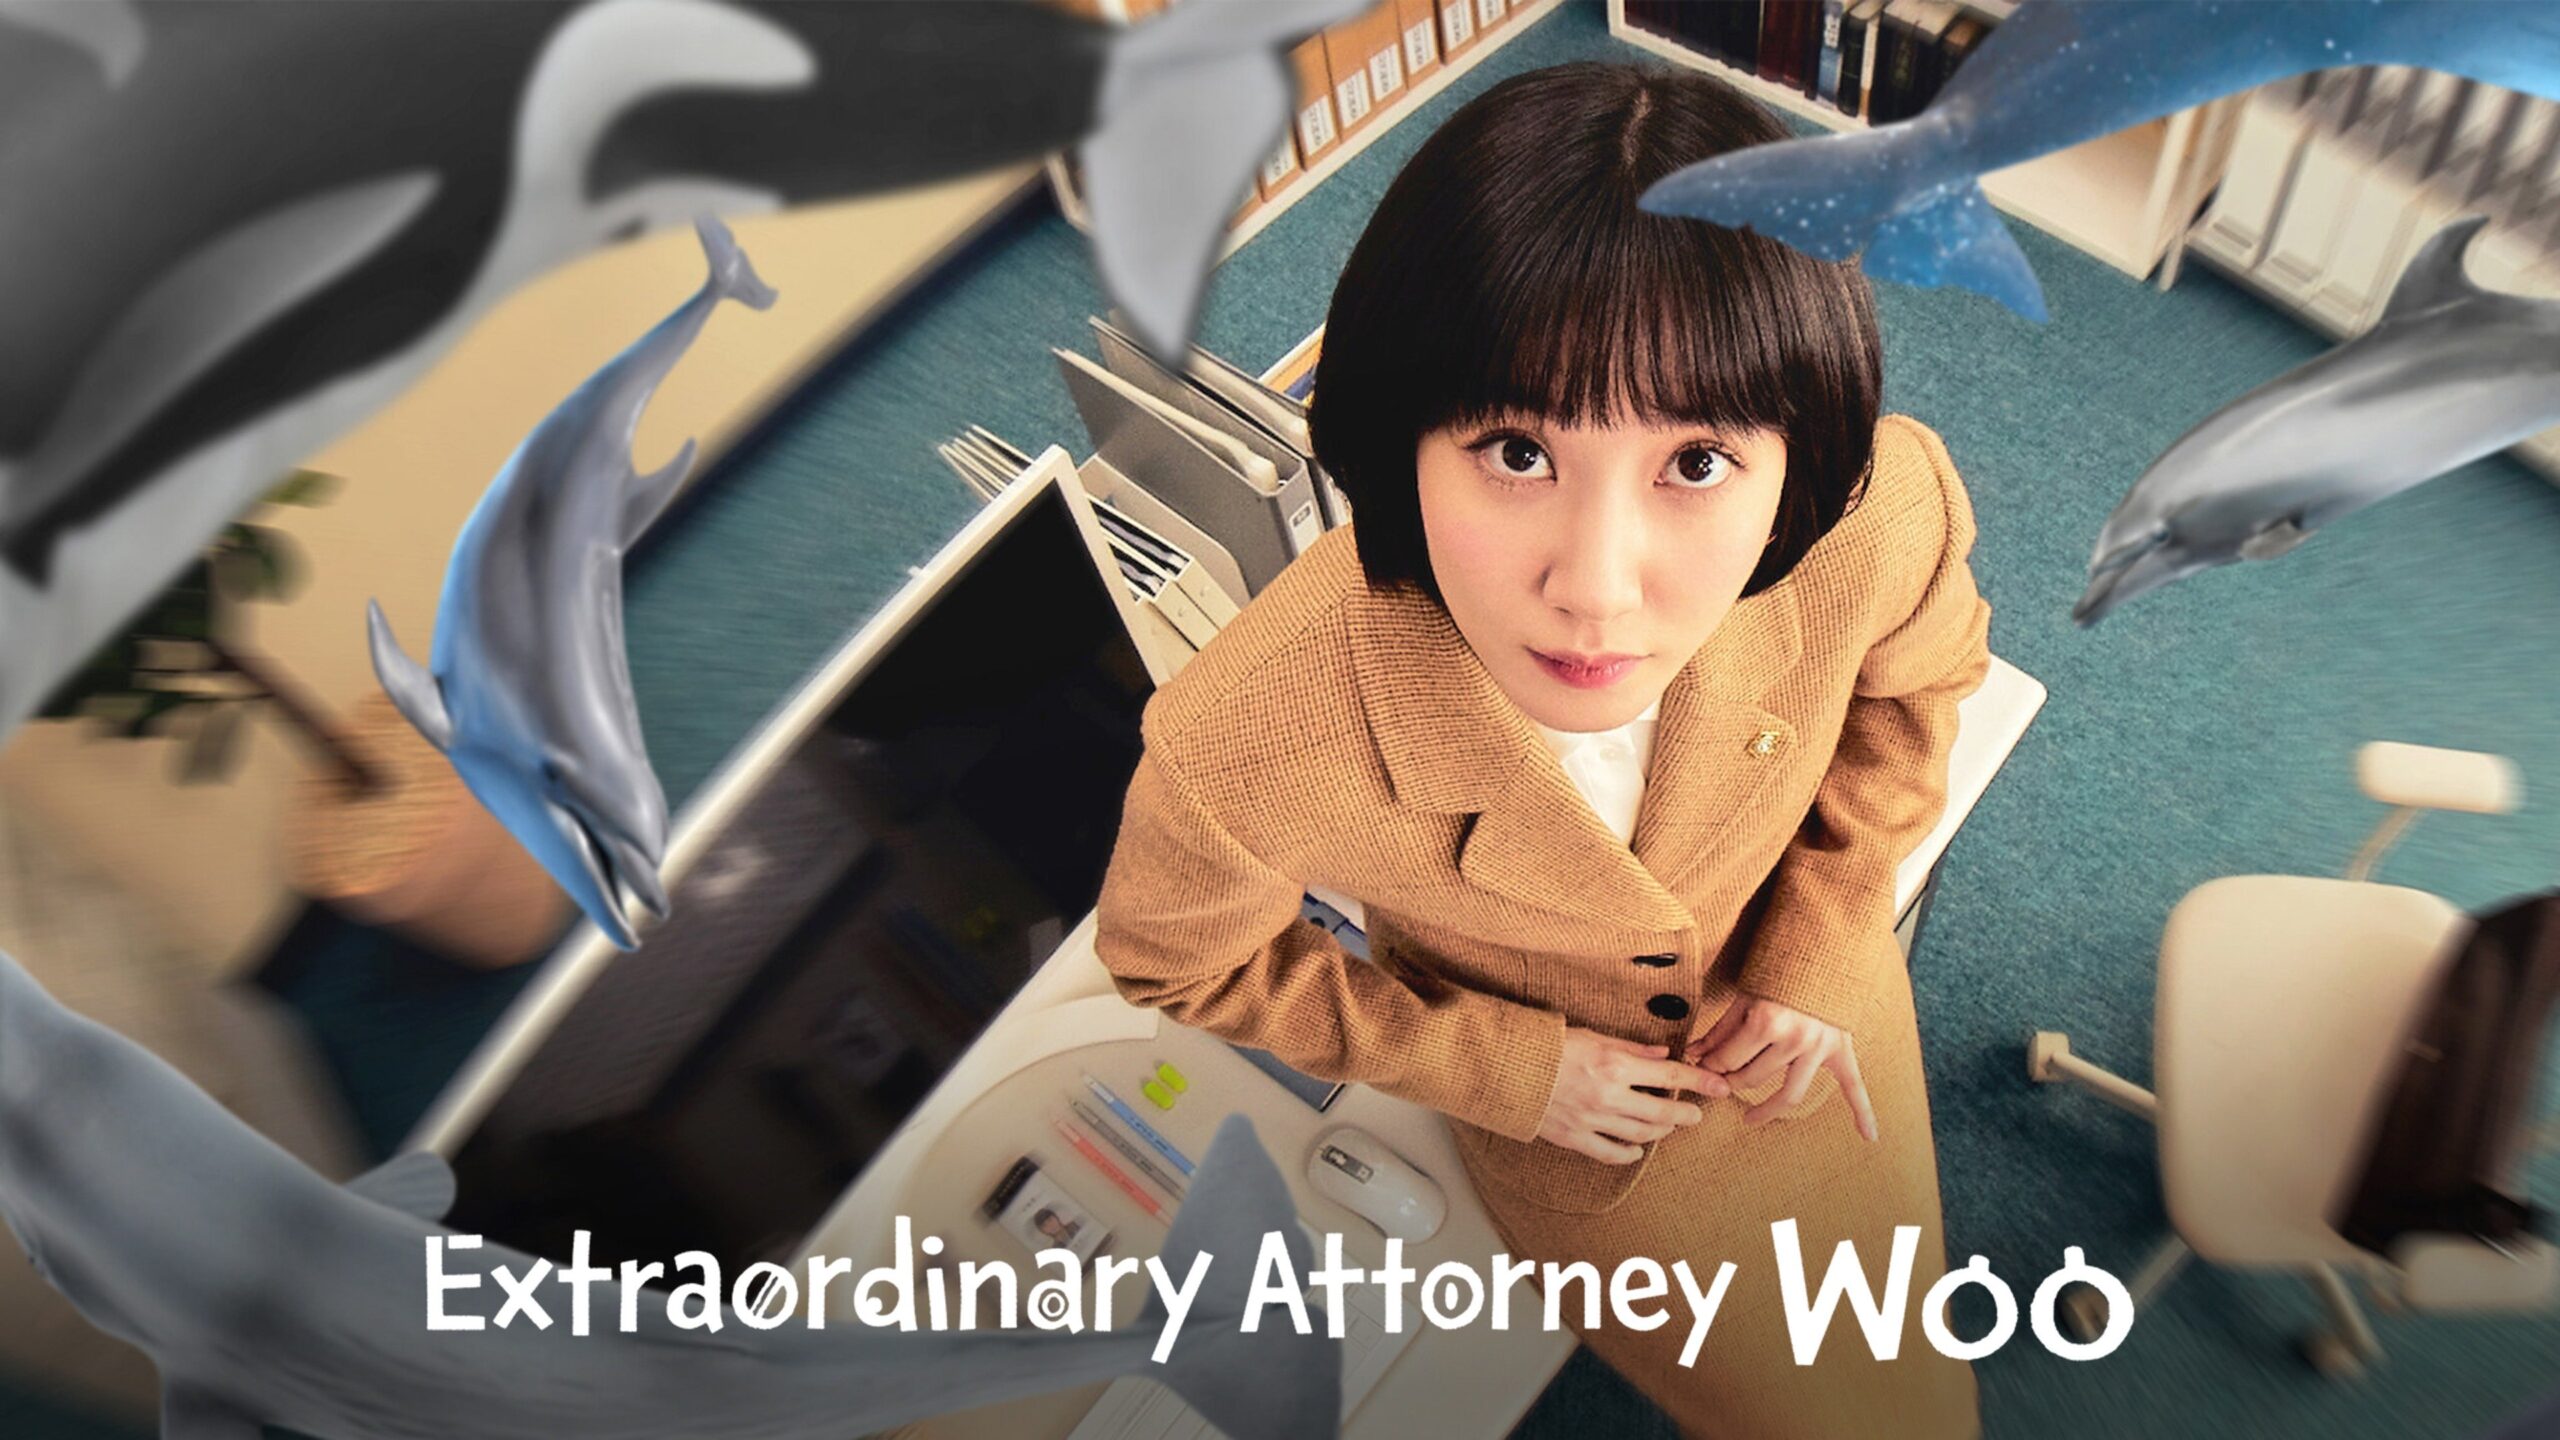 Uma Advogada Extraordinária - 4